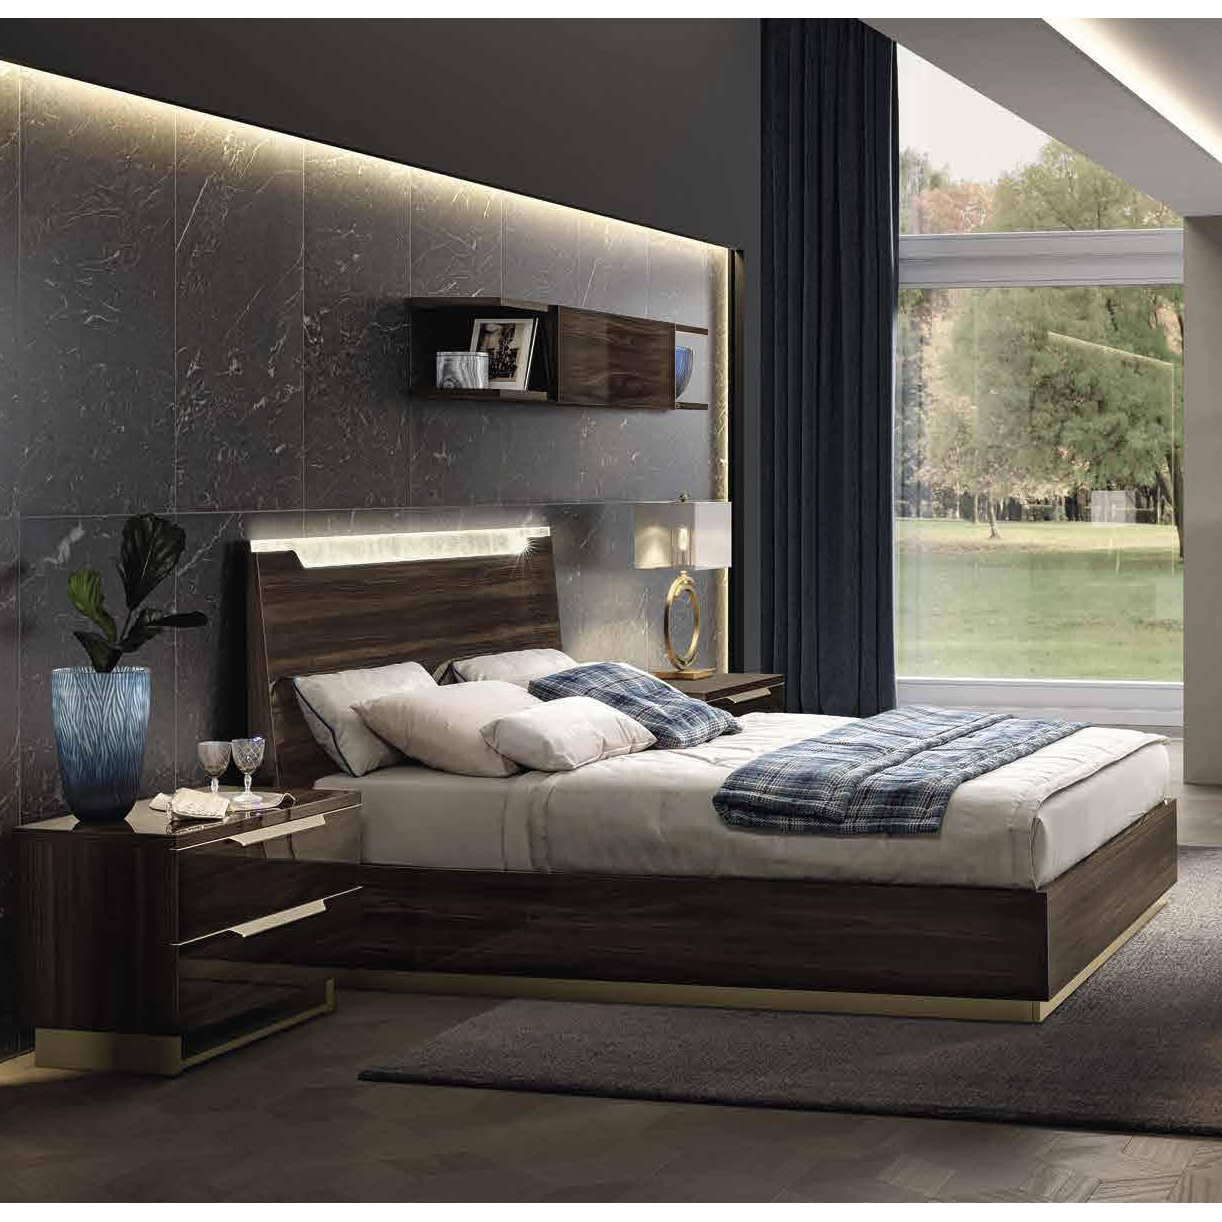 Кровать Camelgroup Smart Noce Patrizio, двуспальная, цвет: грецкий орех, 160x200 см (162LET.01NP)162LET.01NP